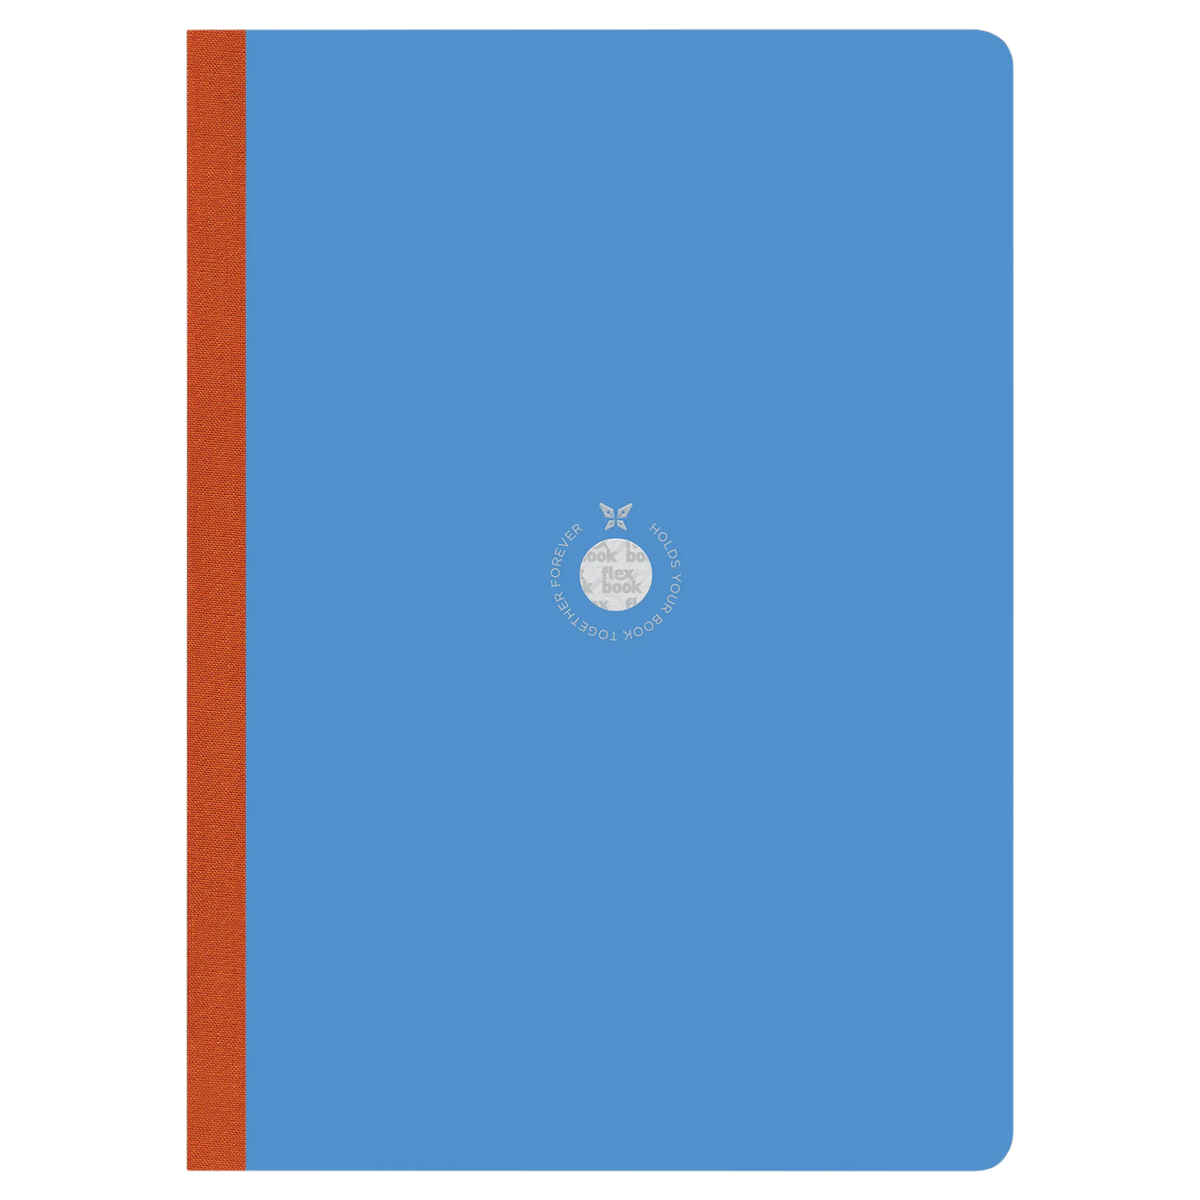 Global Smartbook Blue / ruled / linierten Seiten / Flexbook mit Leinenrücken in Orange